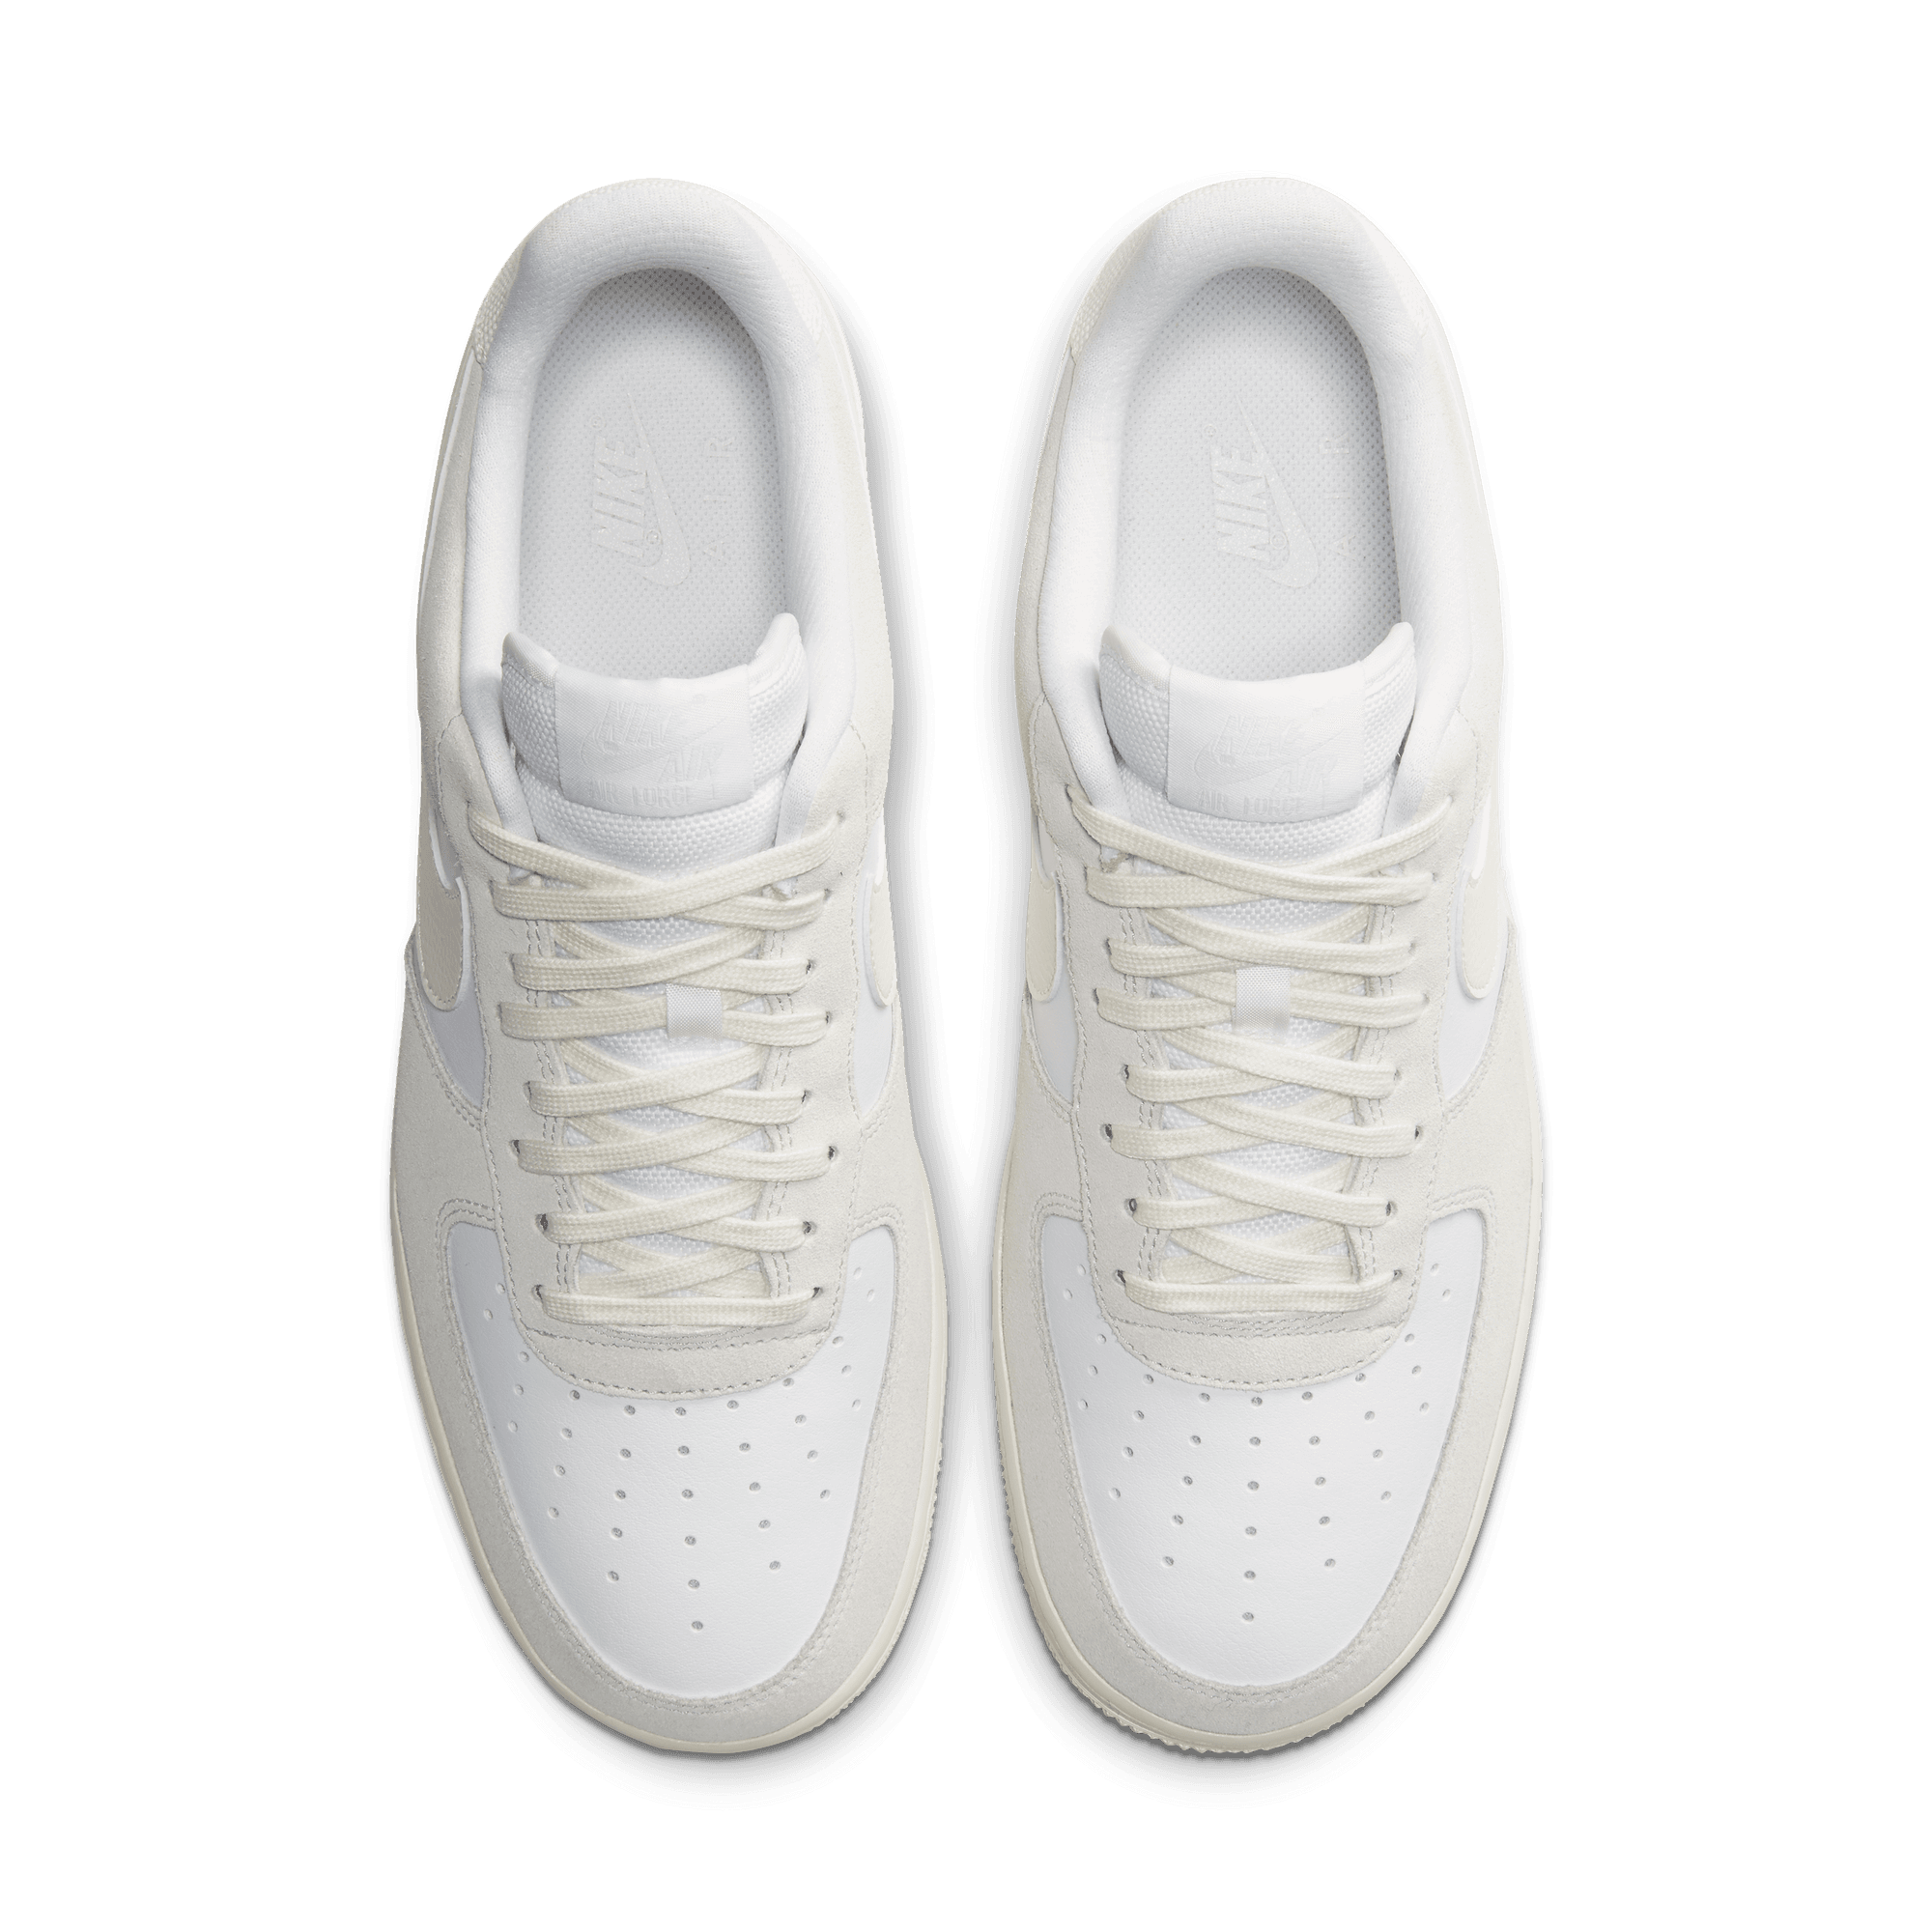 Nike Air Force 1 LV8 - White / Sail / Platinum Tint 11